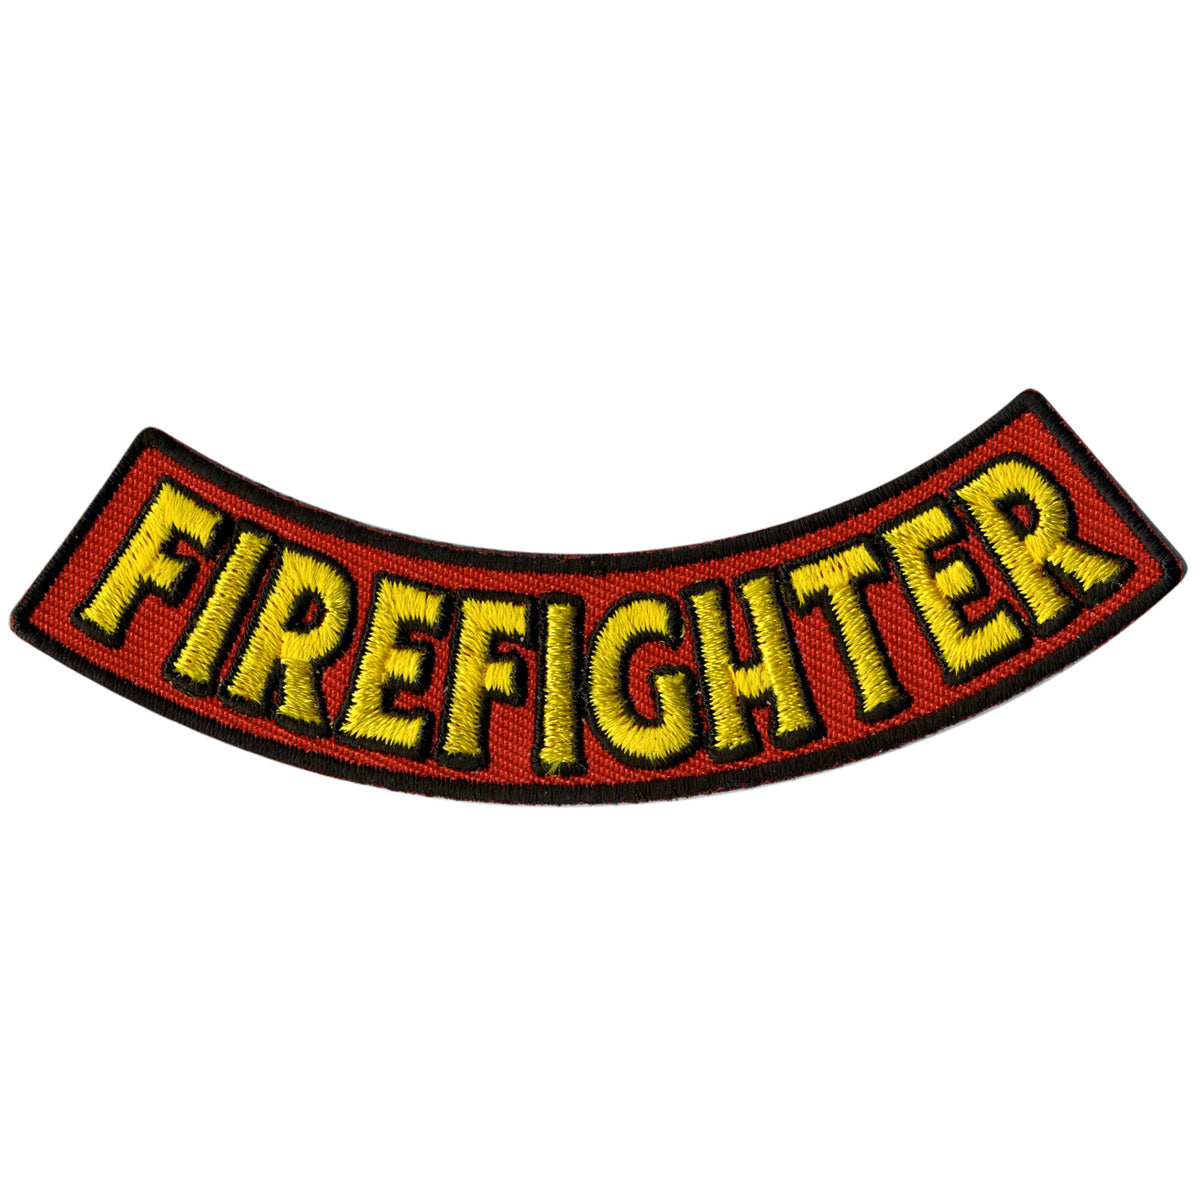 Hot Leathers Firefighter 4” X 1” Bottom Rocker Patch